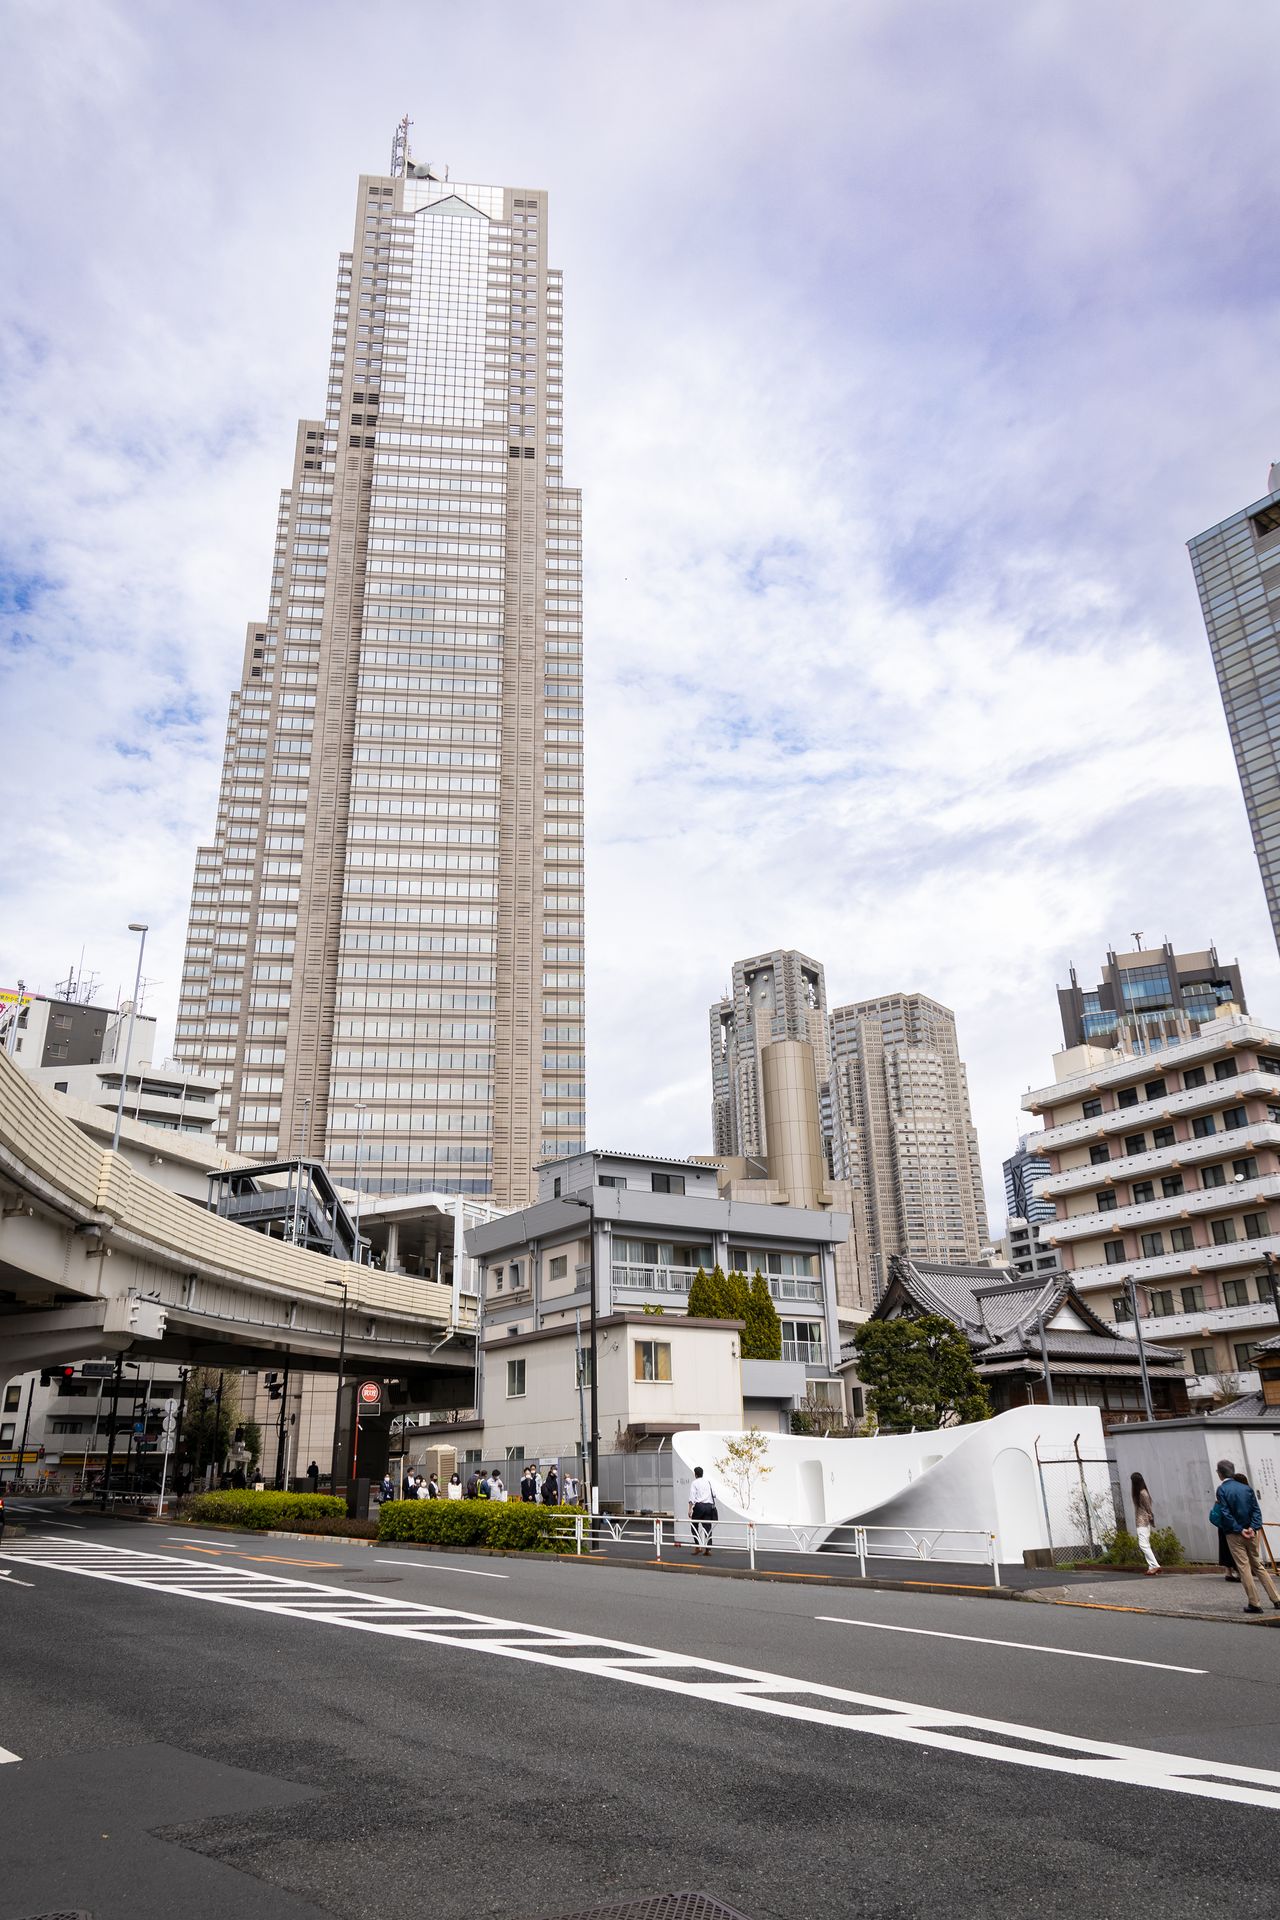 Un baño público de color blanco que destaca en medio de la ciudad. Detrás se ven el hotel Park Hyatt Tokio y el edificio del Gobierno Metropolitano.